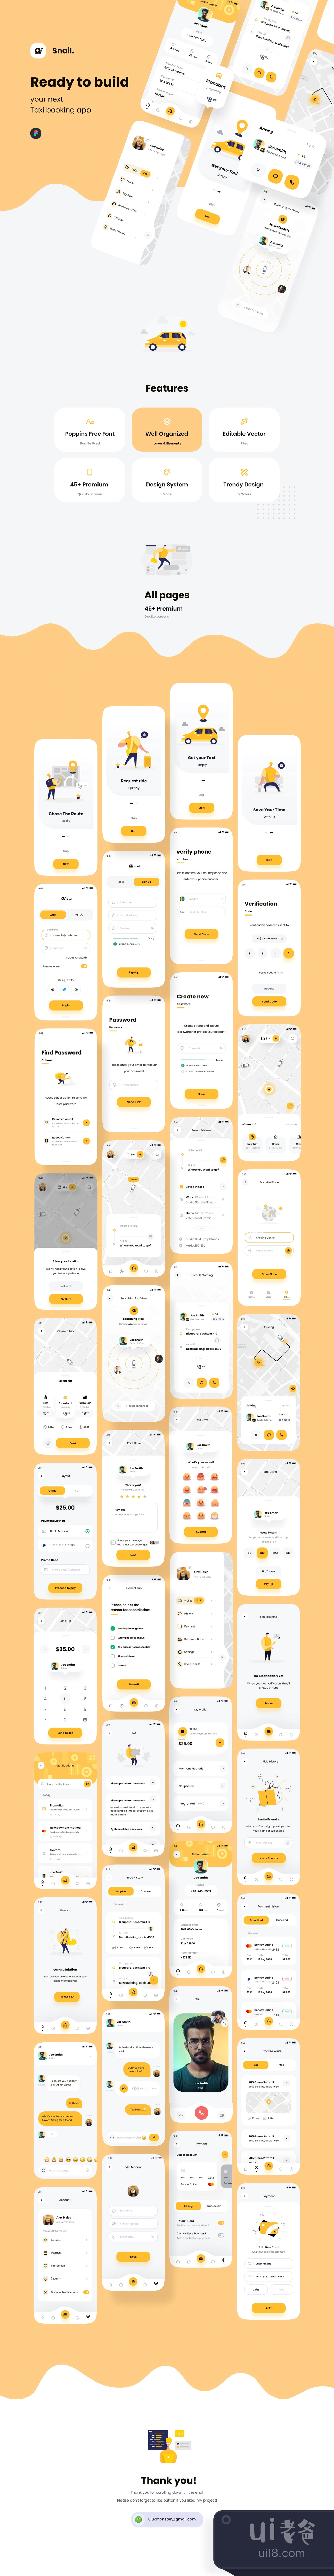 蜗牛出租车预订应用UI套件 (Snail Taxi booking app UI Kit)插图1